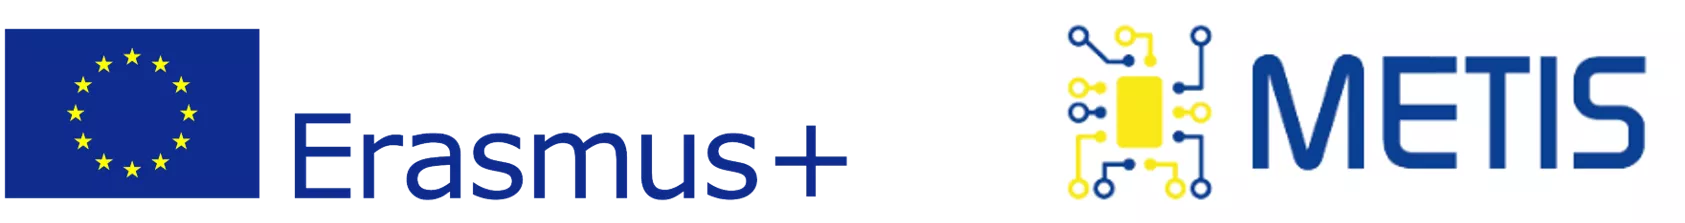 METIS Erasmus logo